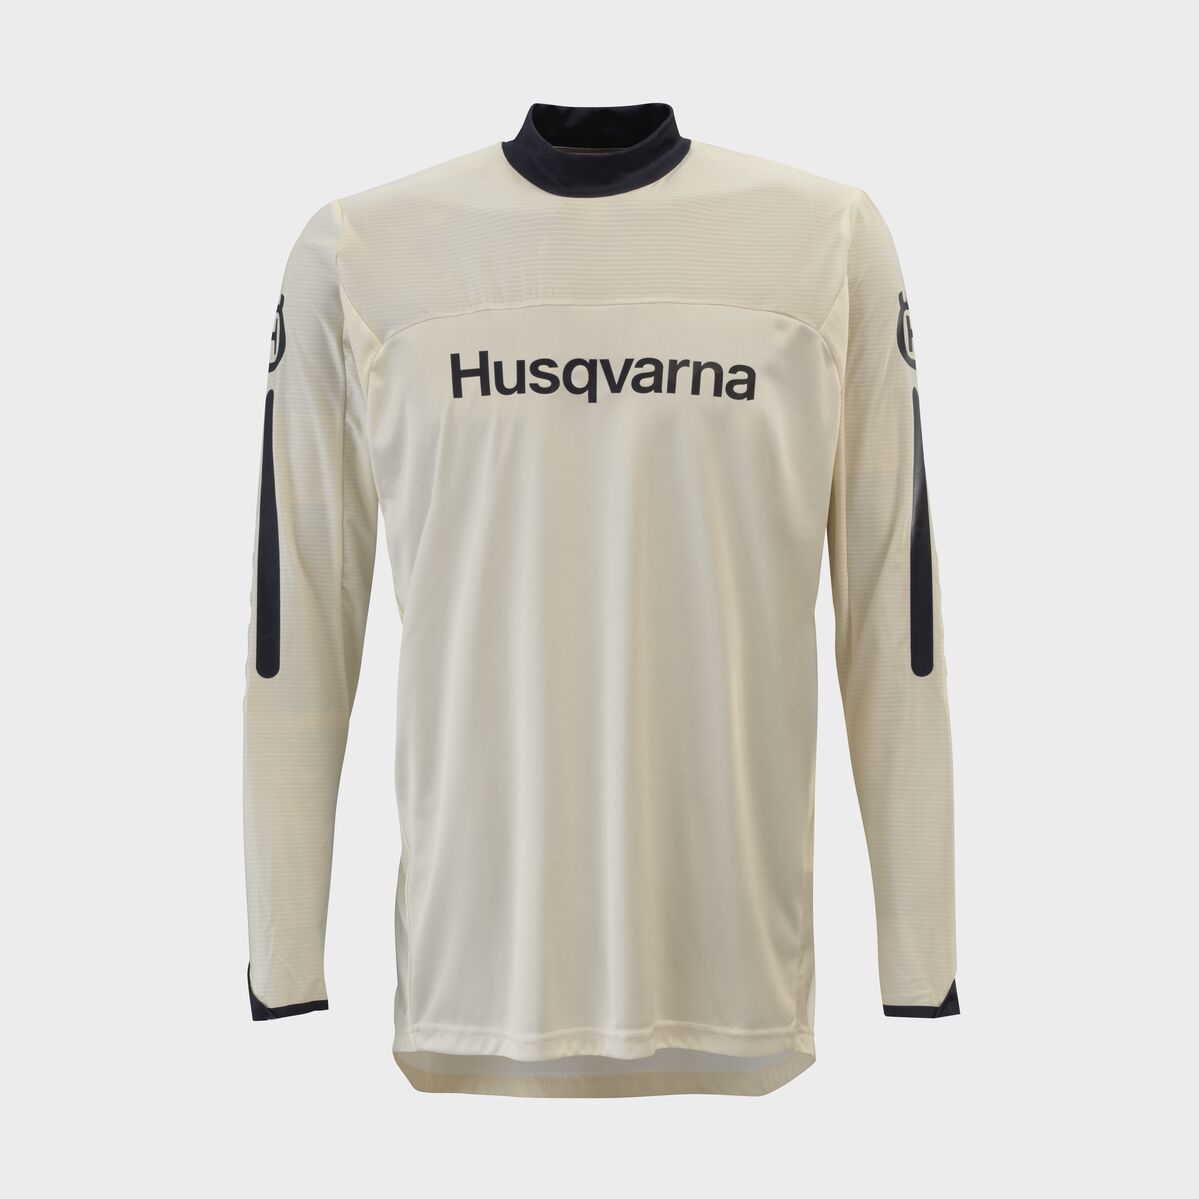 Husqvarna Origin Shirt - White or Red